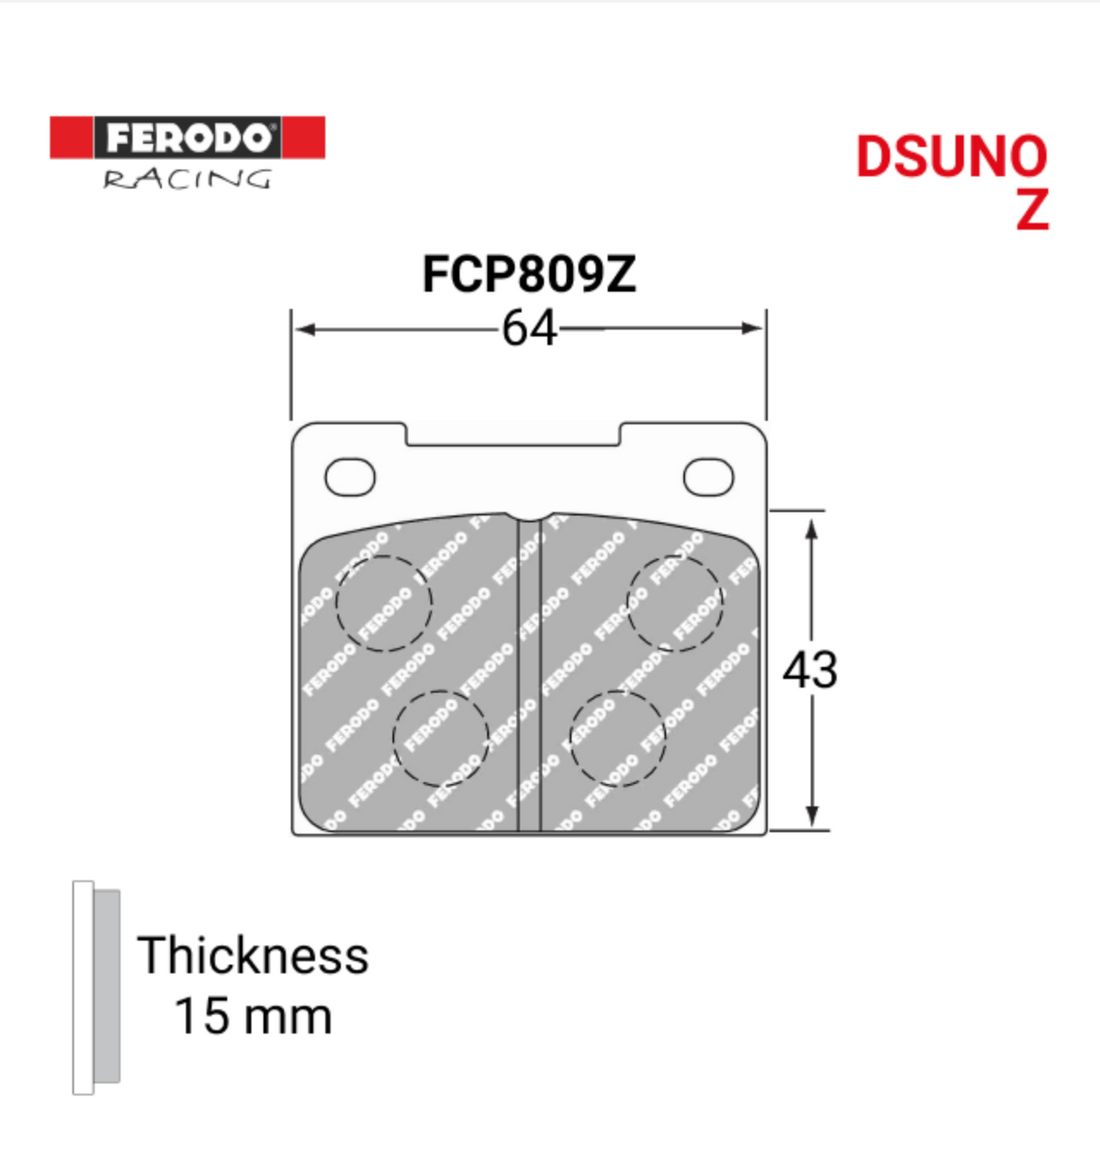 Ferodo FCP809Z DSUNO(Z) Brake Pads